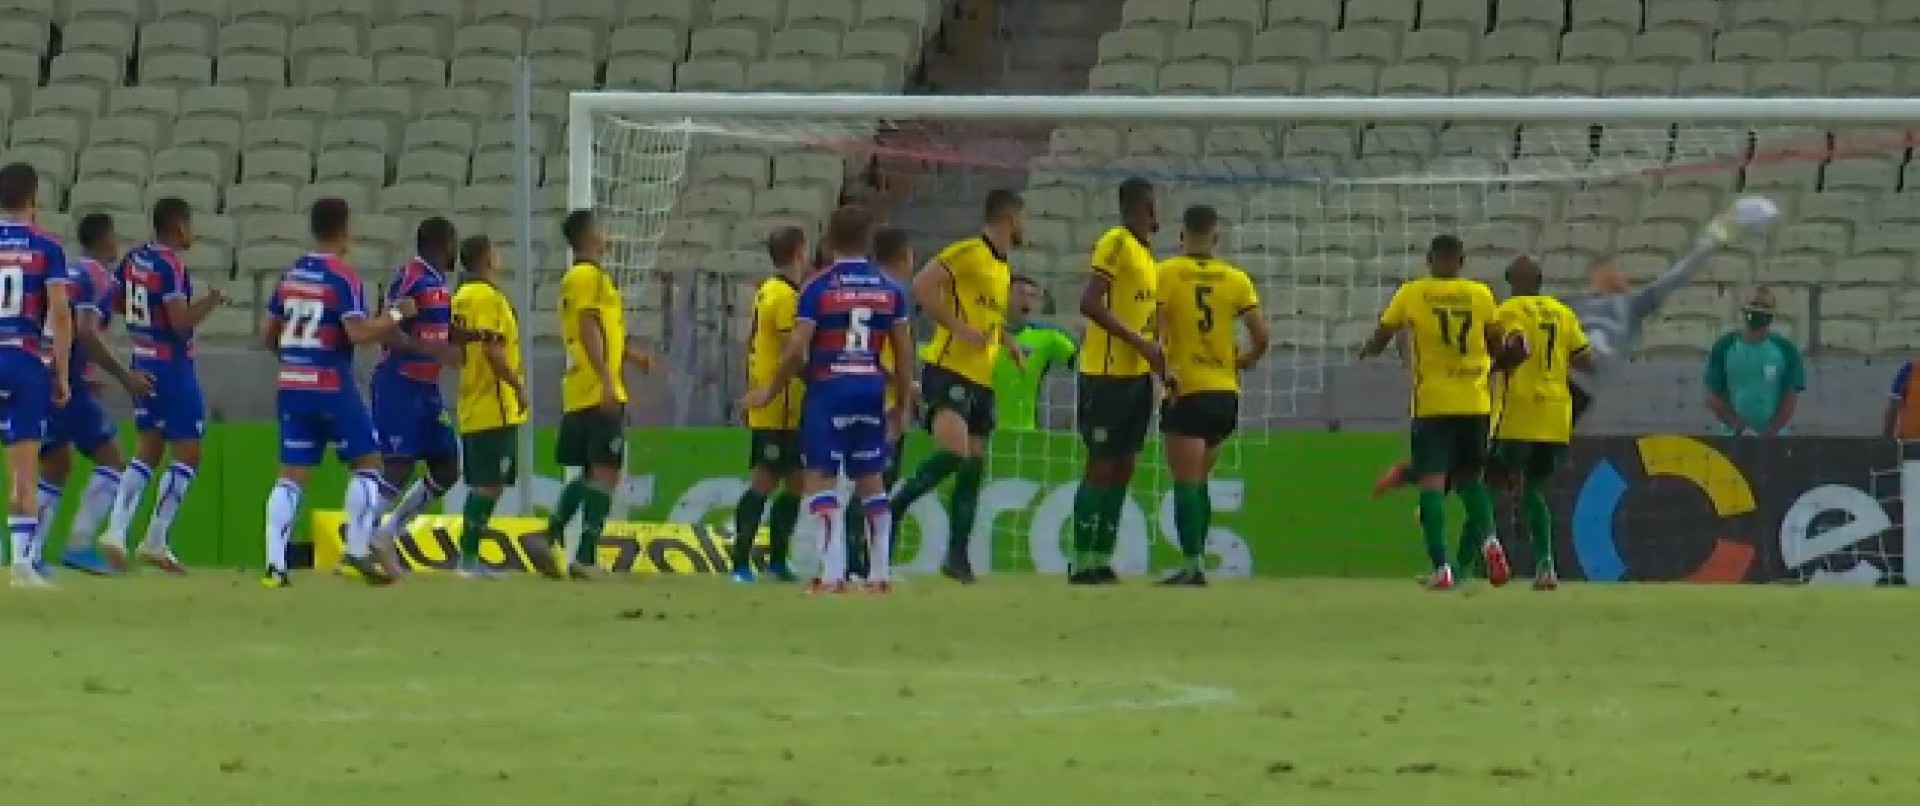 Pikachu cobra falta e marca o único gol da partida, na vitória do Fortaleza sobre o Ypiranga (Foto: REPRODUÇÃO)